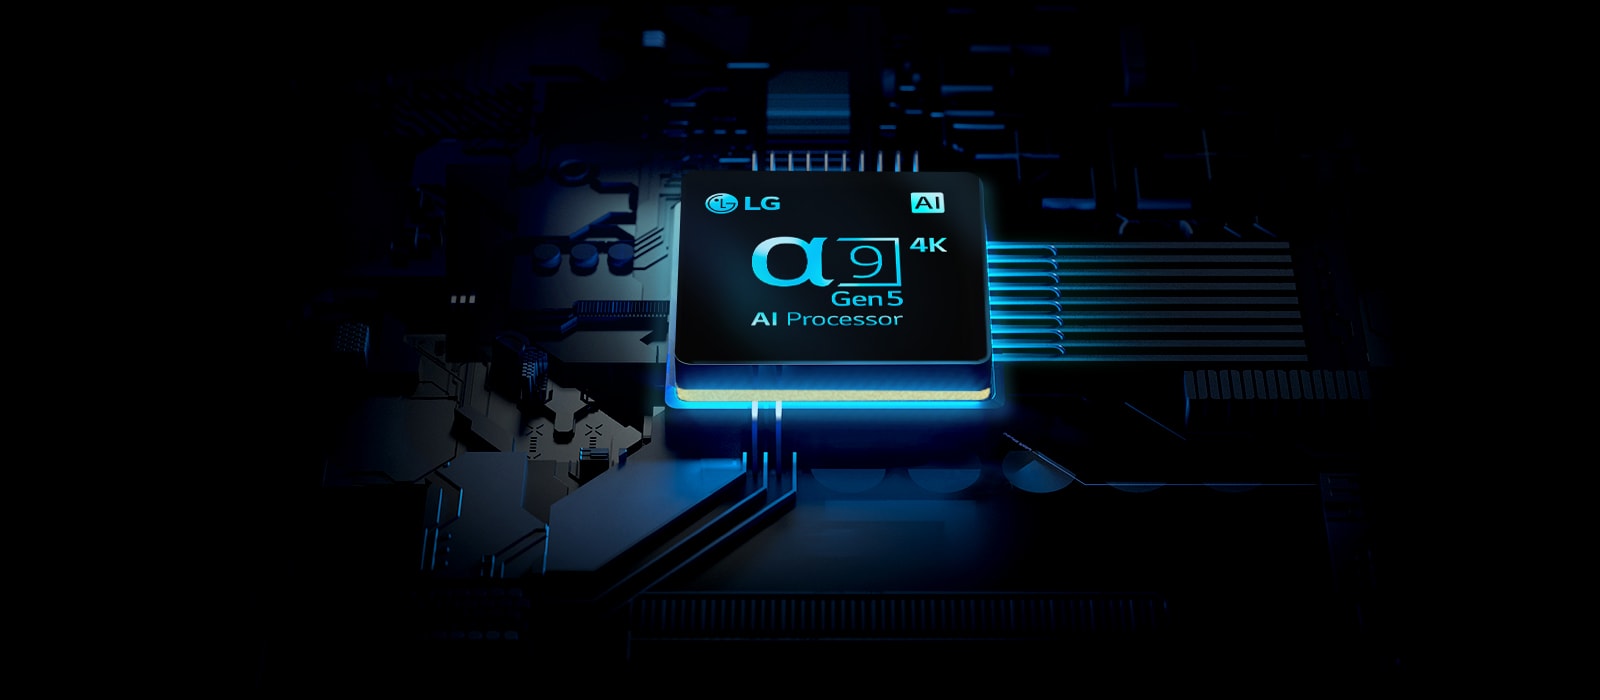 Chip Bộ xử lý AI ⍺9 Thế hệ 5 4K của LG được thể hiện với các tia sáng phát ra từ bộ xử lý.